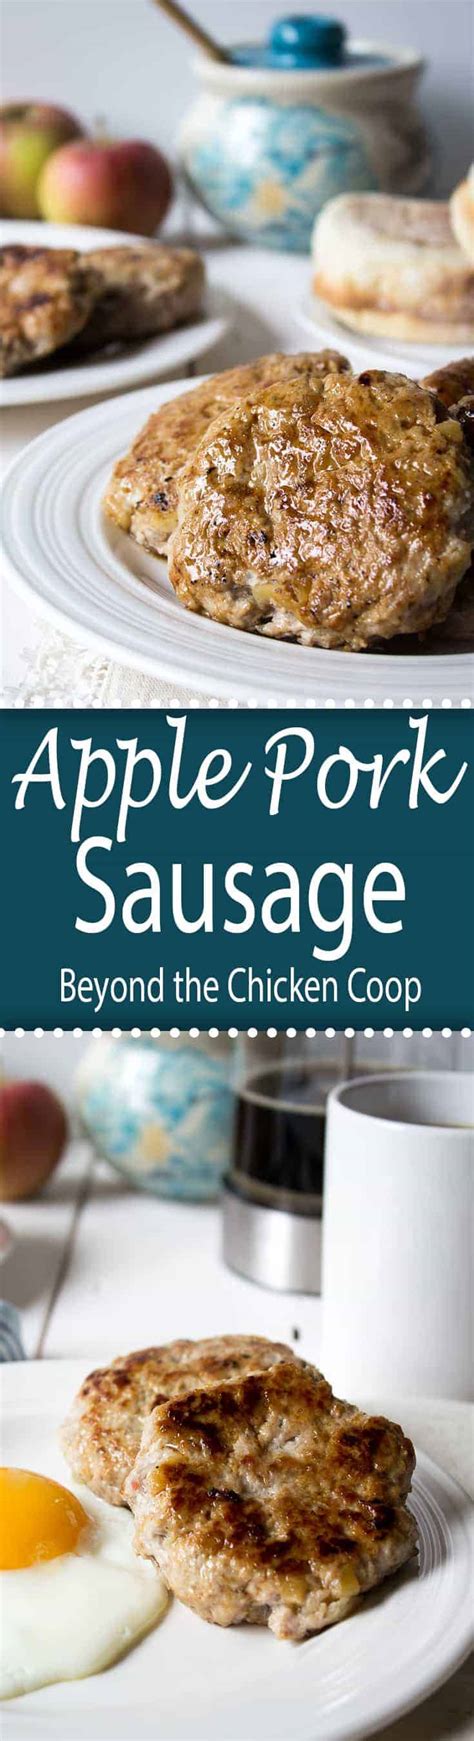 apple pork breakfast sausage   chicken coop